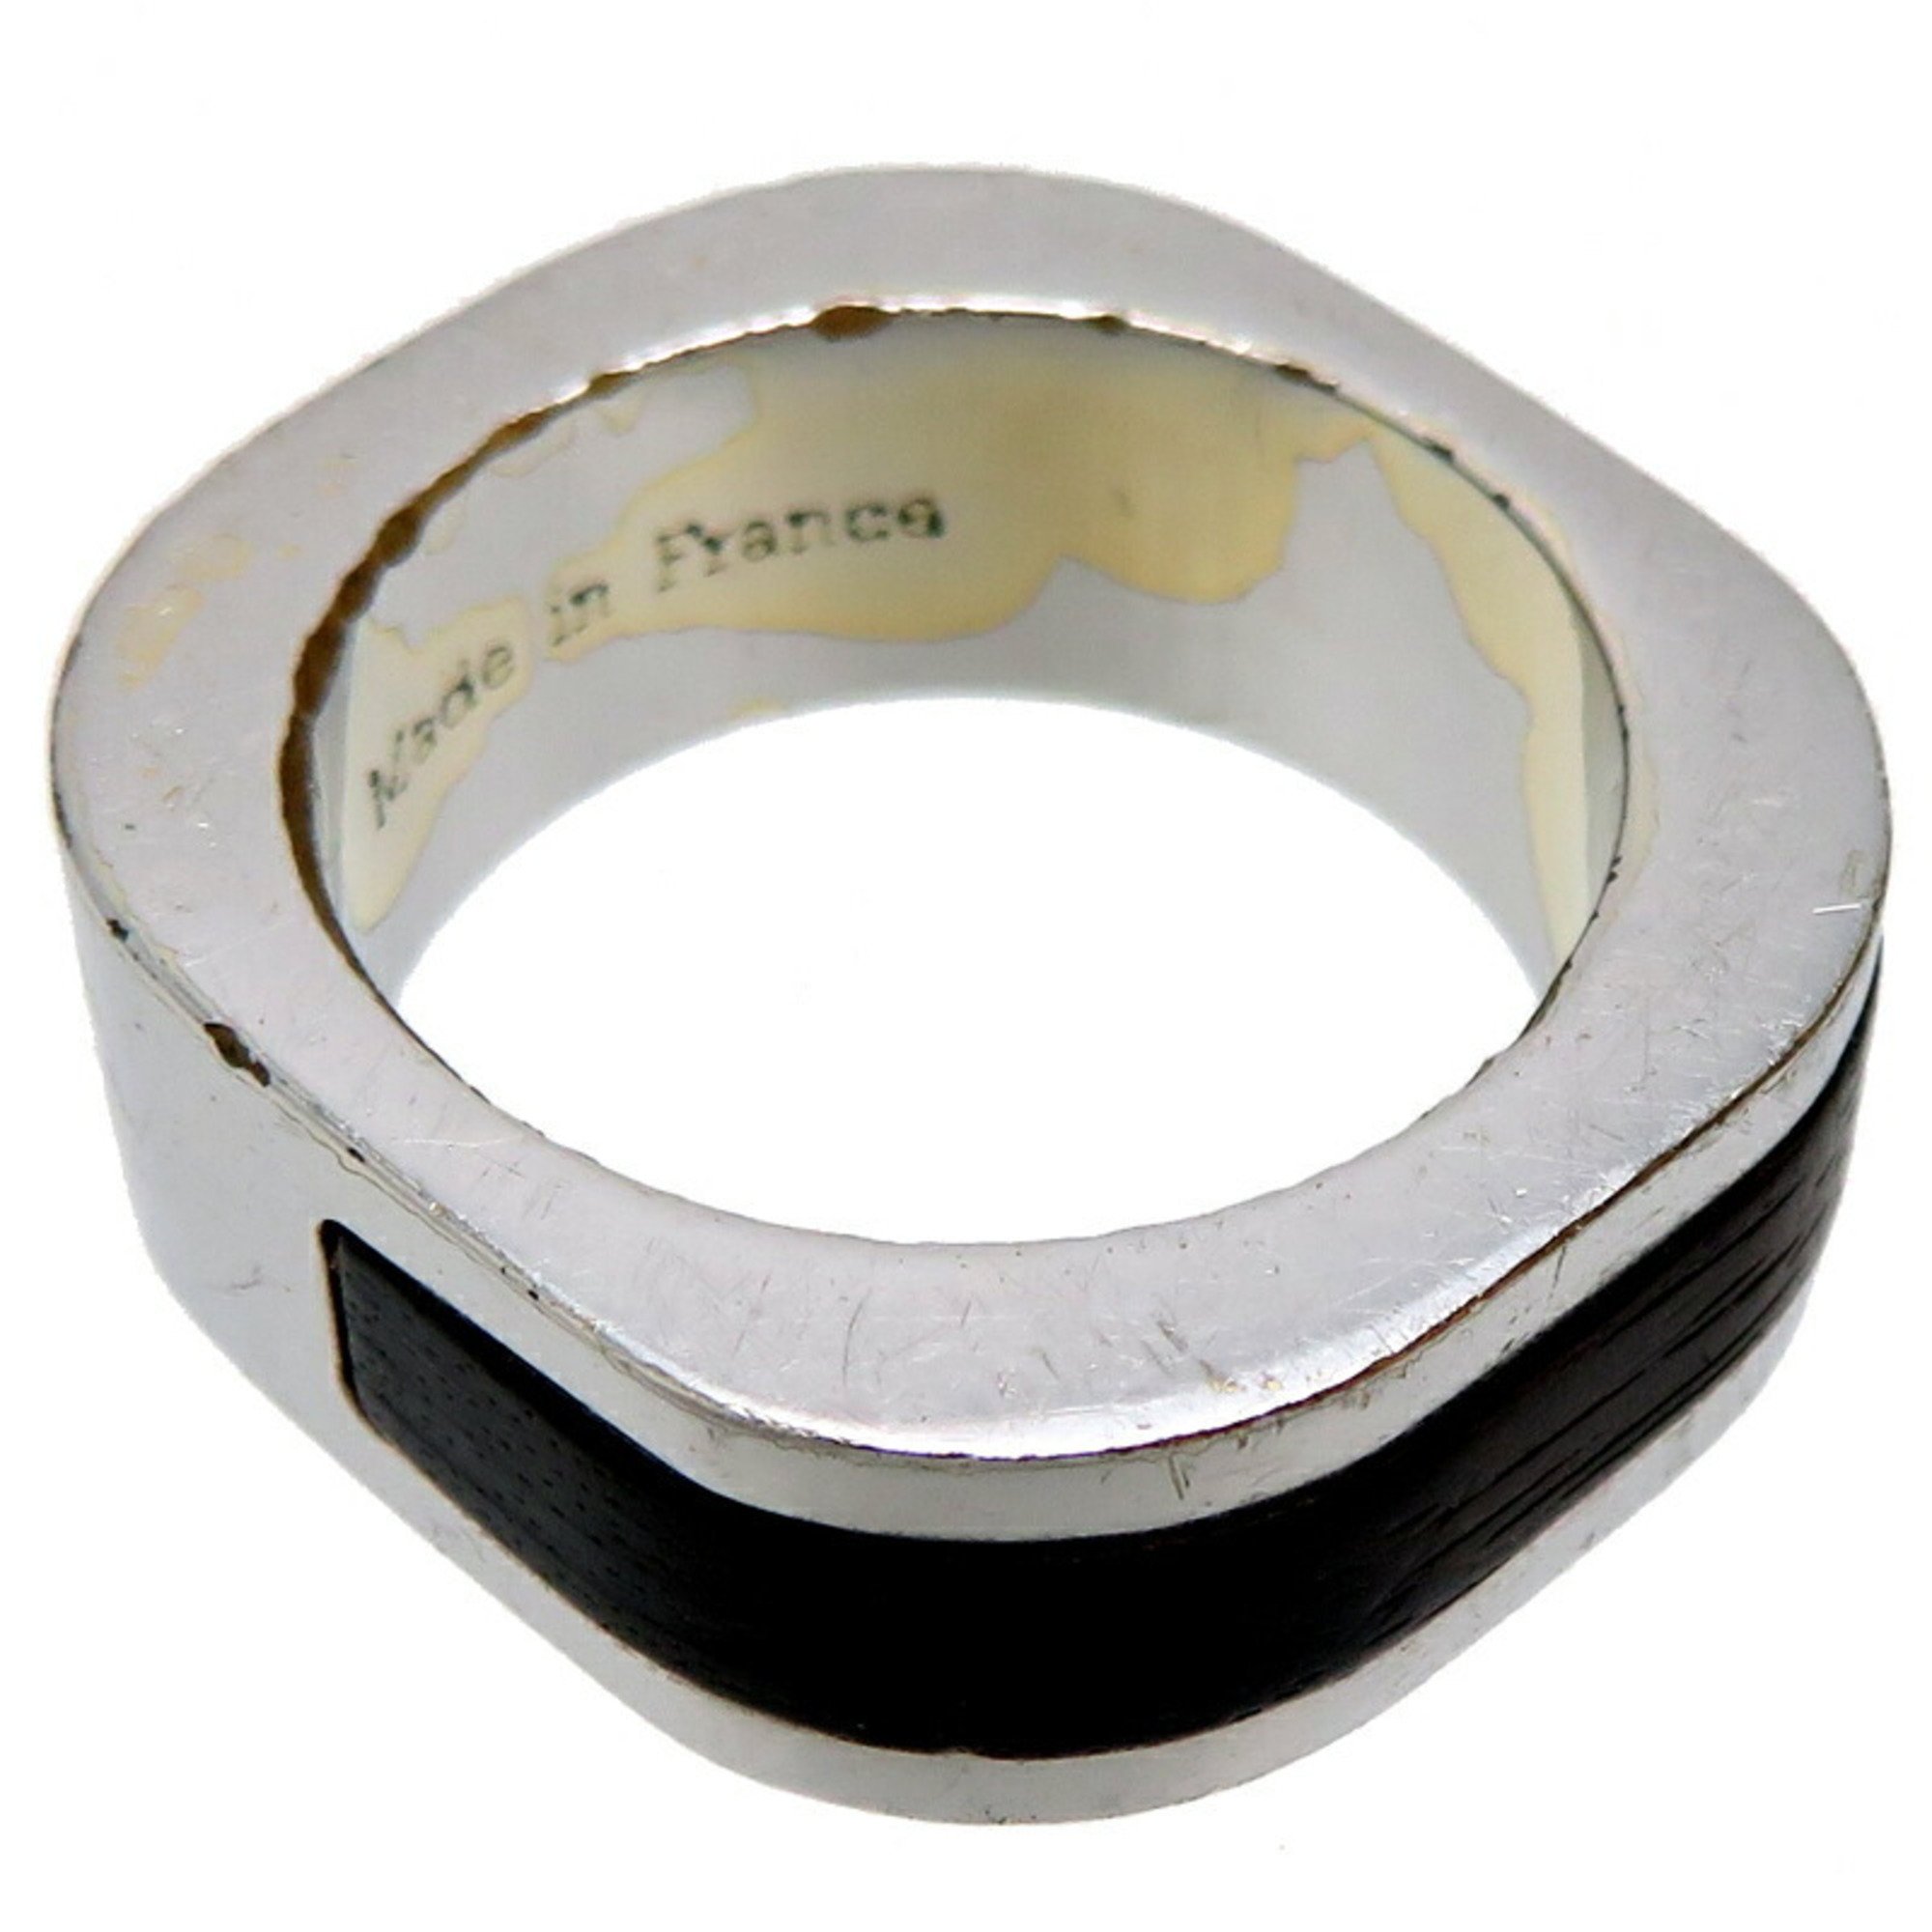 Louis Vuitton Berg Metal et Bois Men's Ring M65340 Size 16